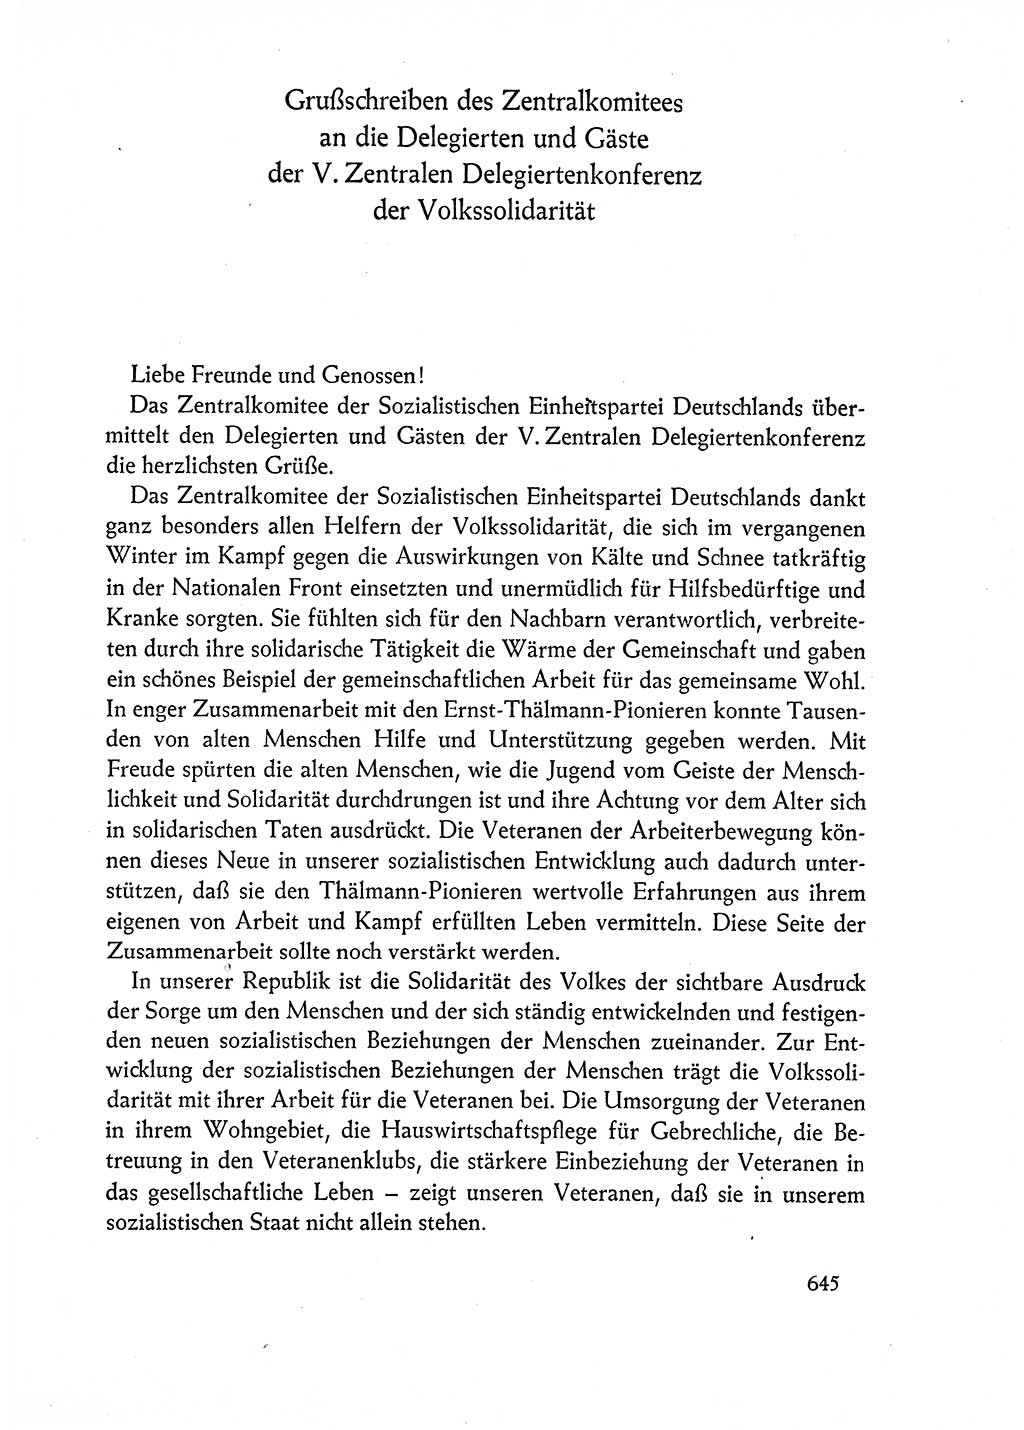 Dokumente der Sozialistischen Einheitspartei Deutschlands (SED) [Deutsche Demokratische Republik (DDR)] 1962-1963, Seite 645 (Dok. SED DDR 1962-1963, S. 645)